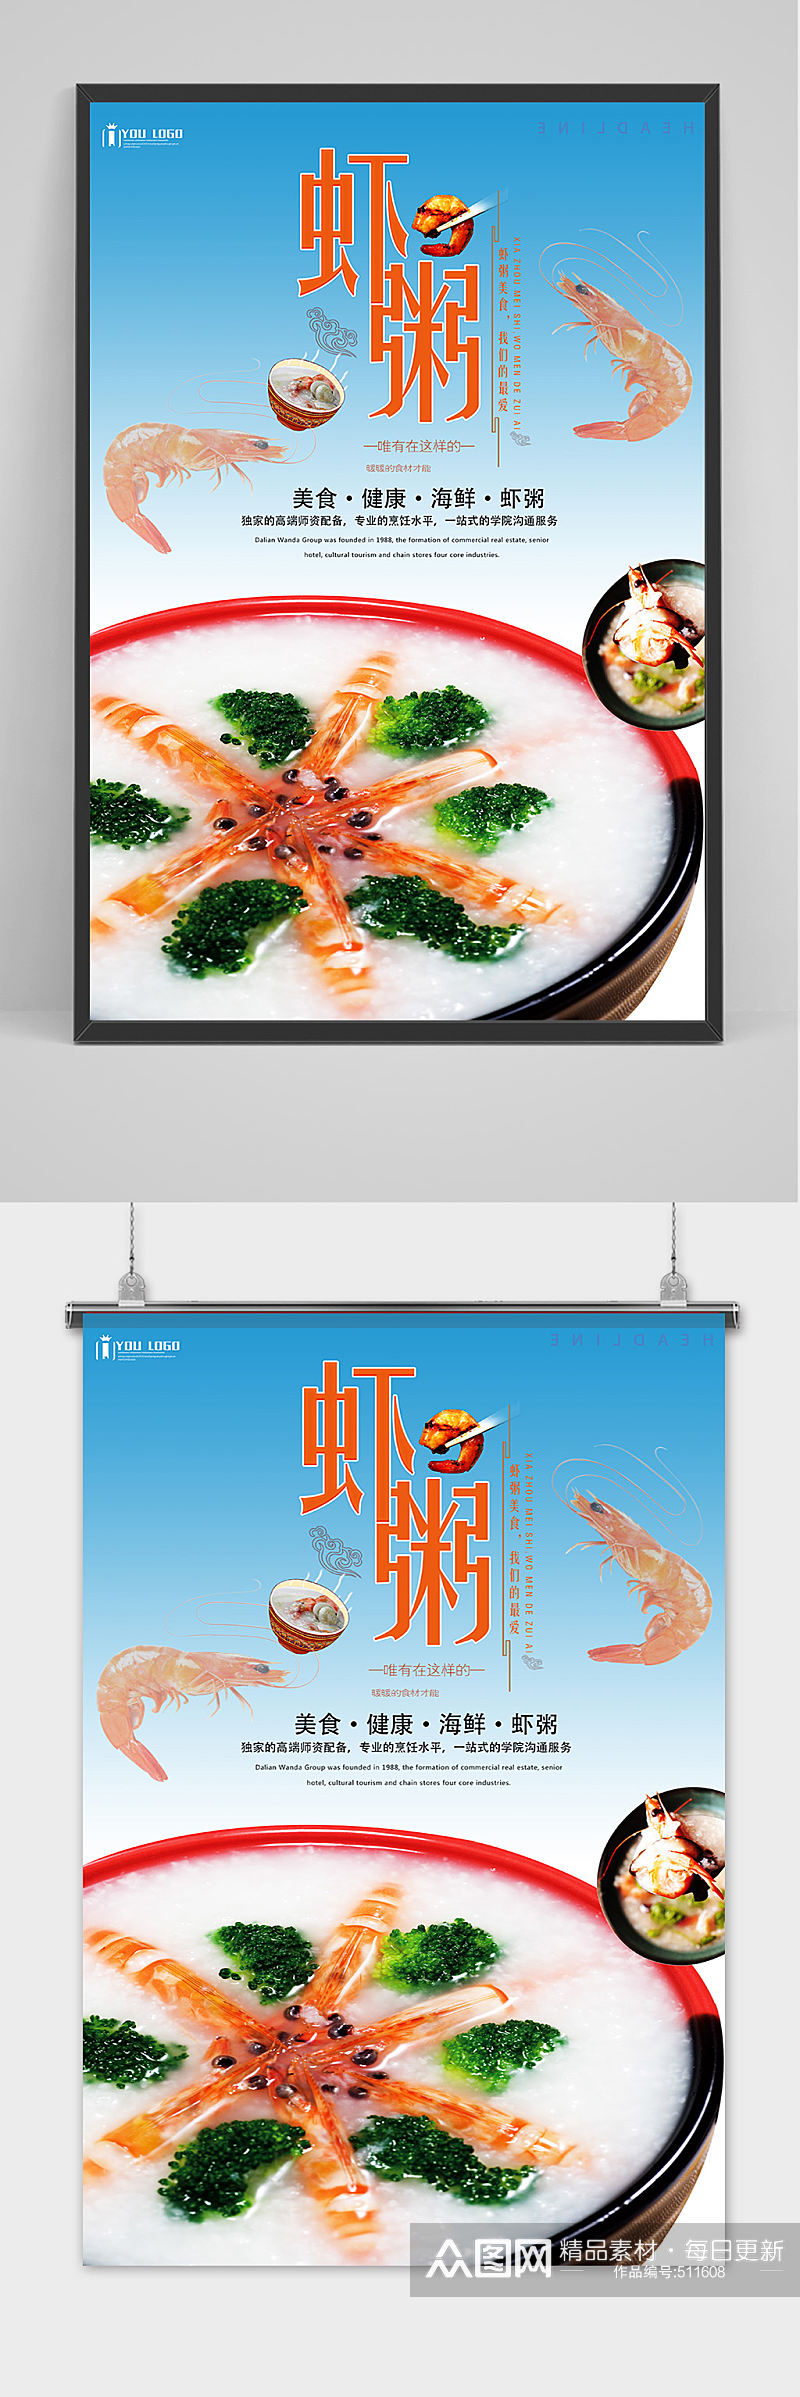 养生虾粥宣传海报模版素材